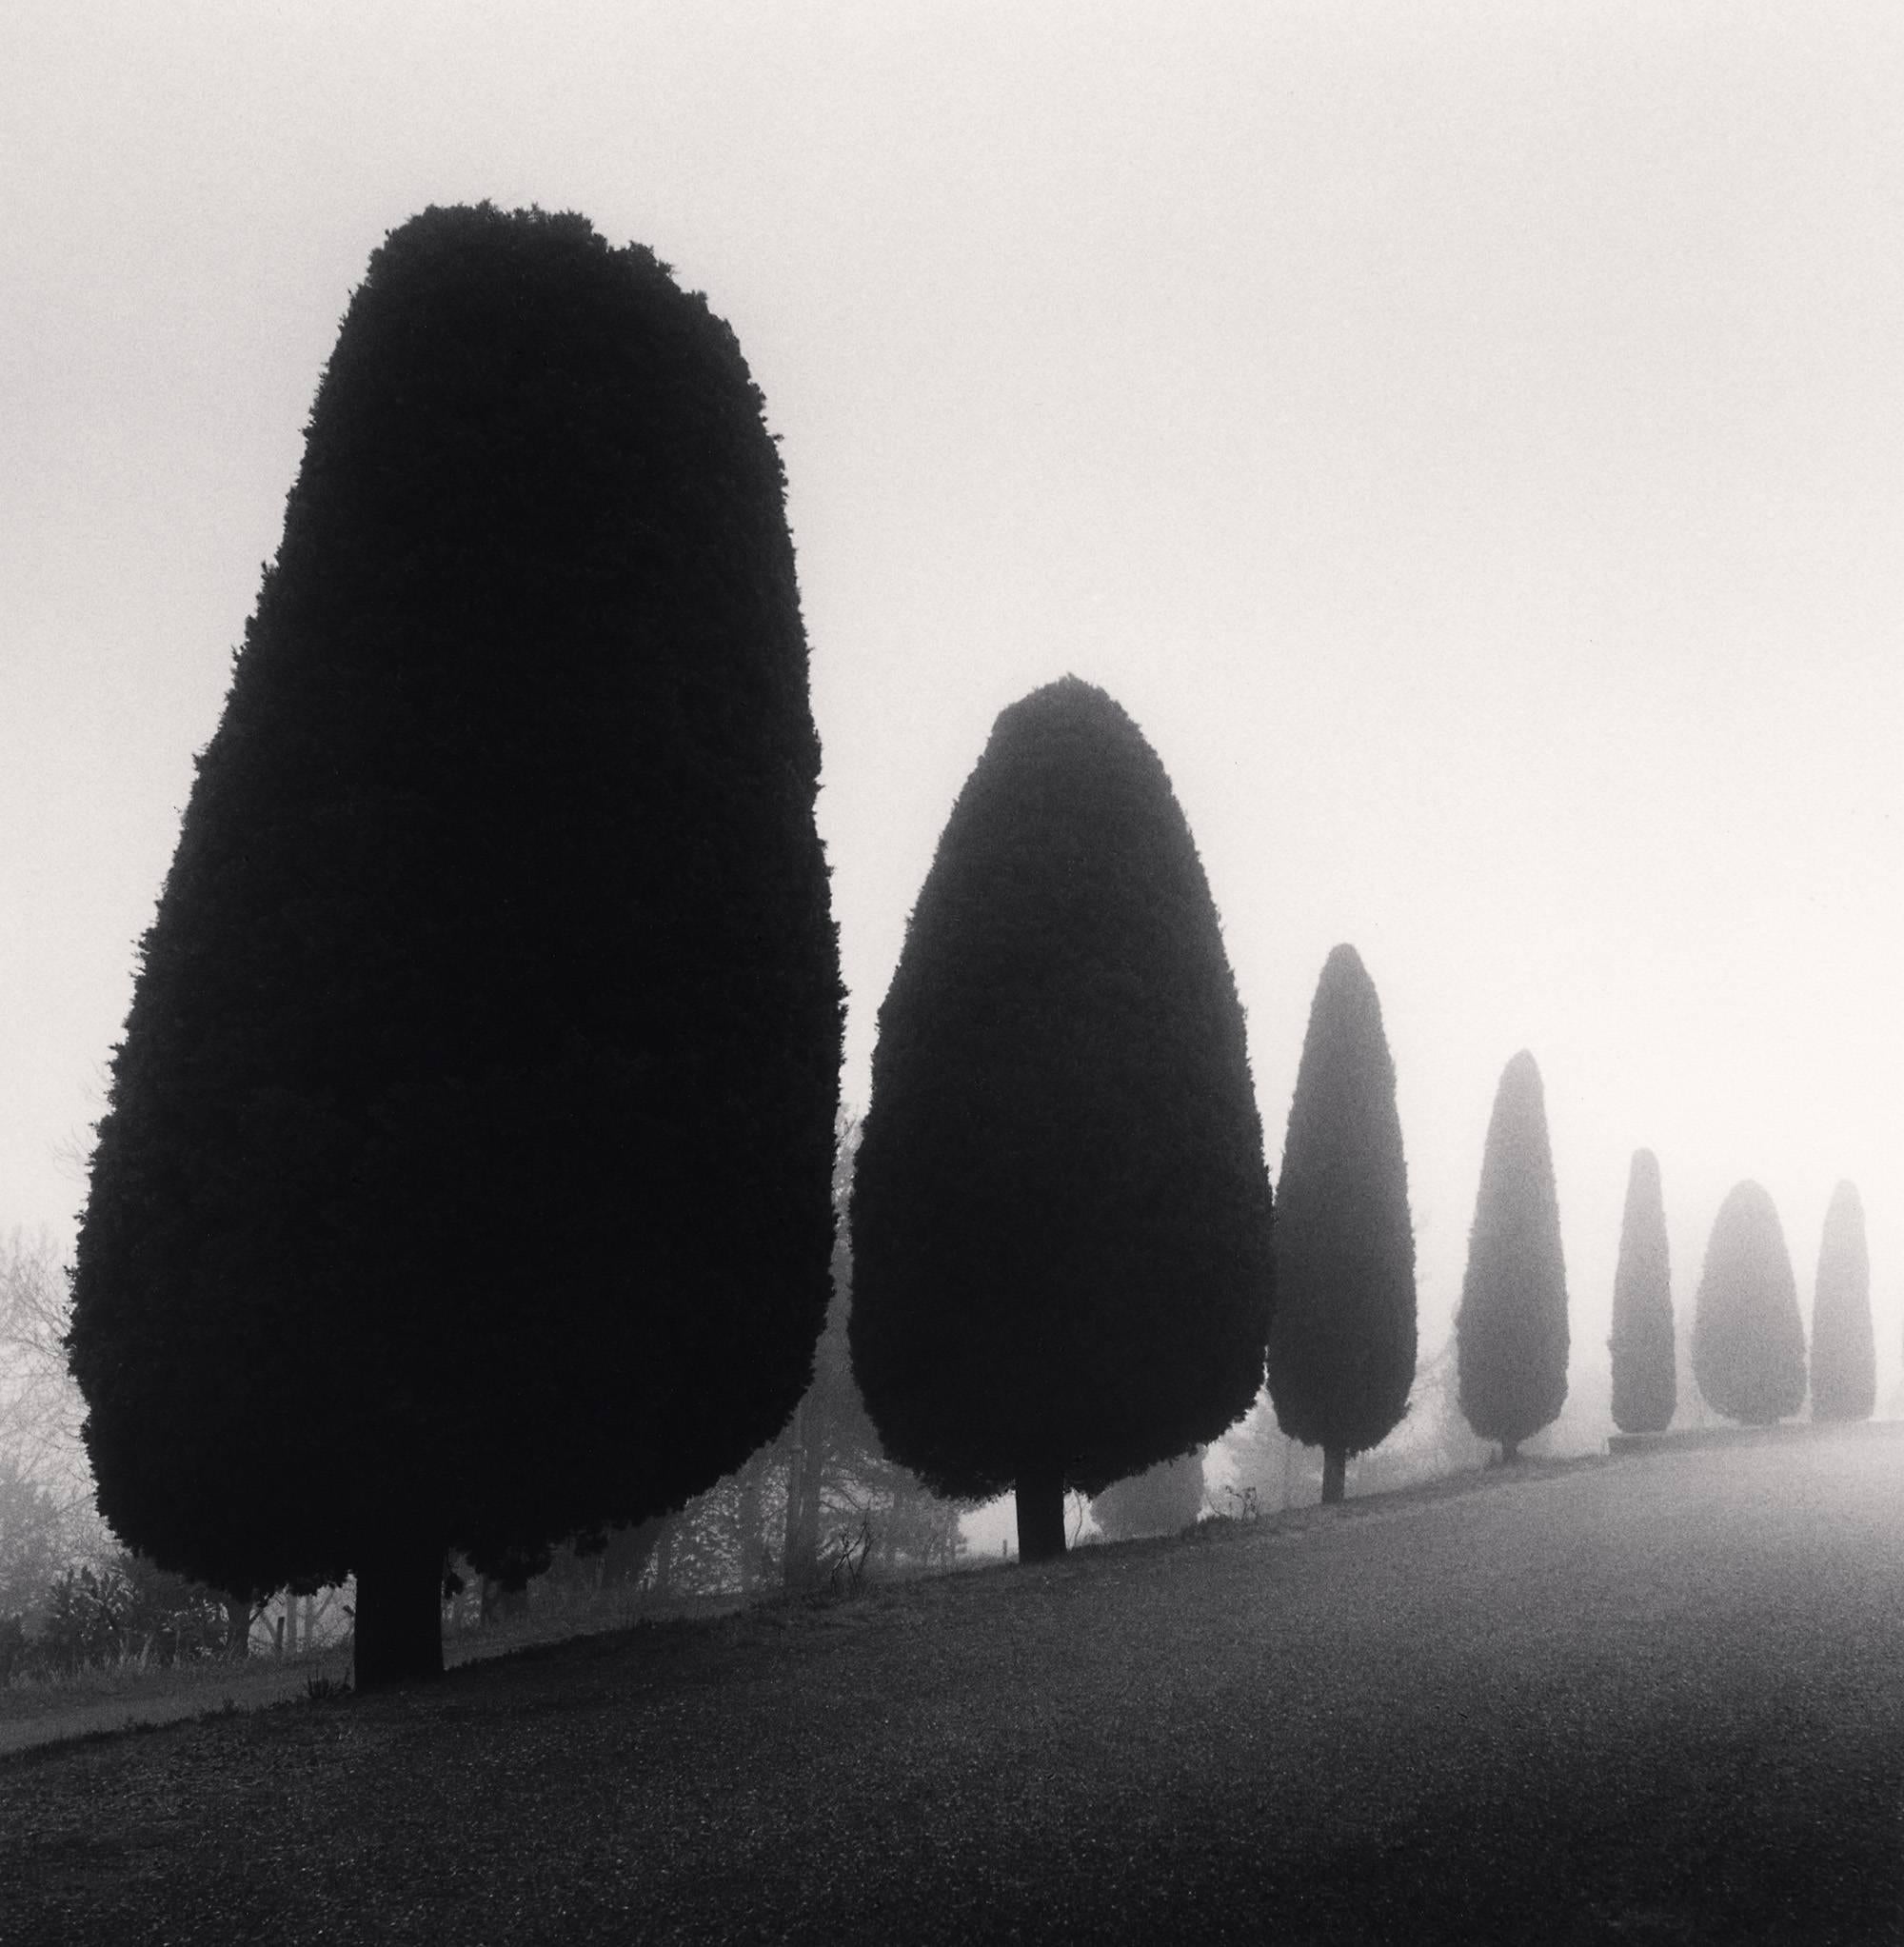 Michael Kenna Black and White Photograph – Sieben Bäume, Castello di Canossa, Italien, limitierte Auflage, Silbergelatinedruck 